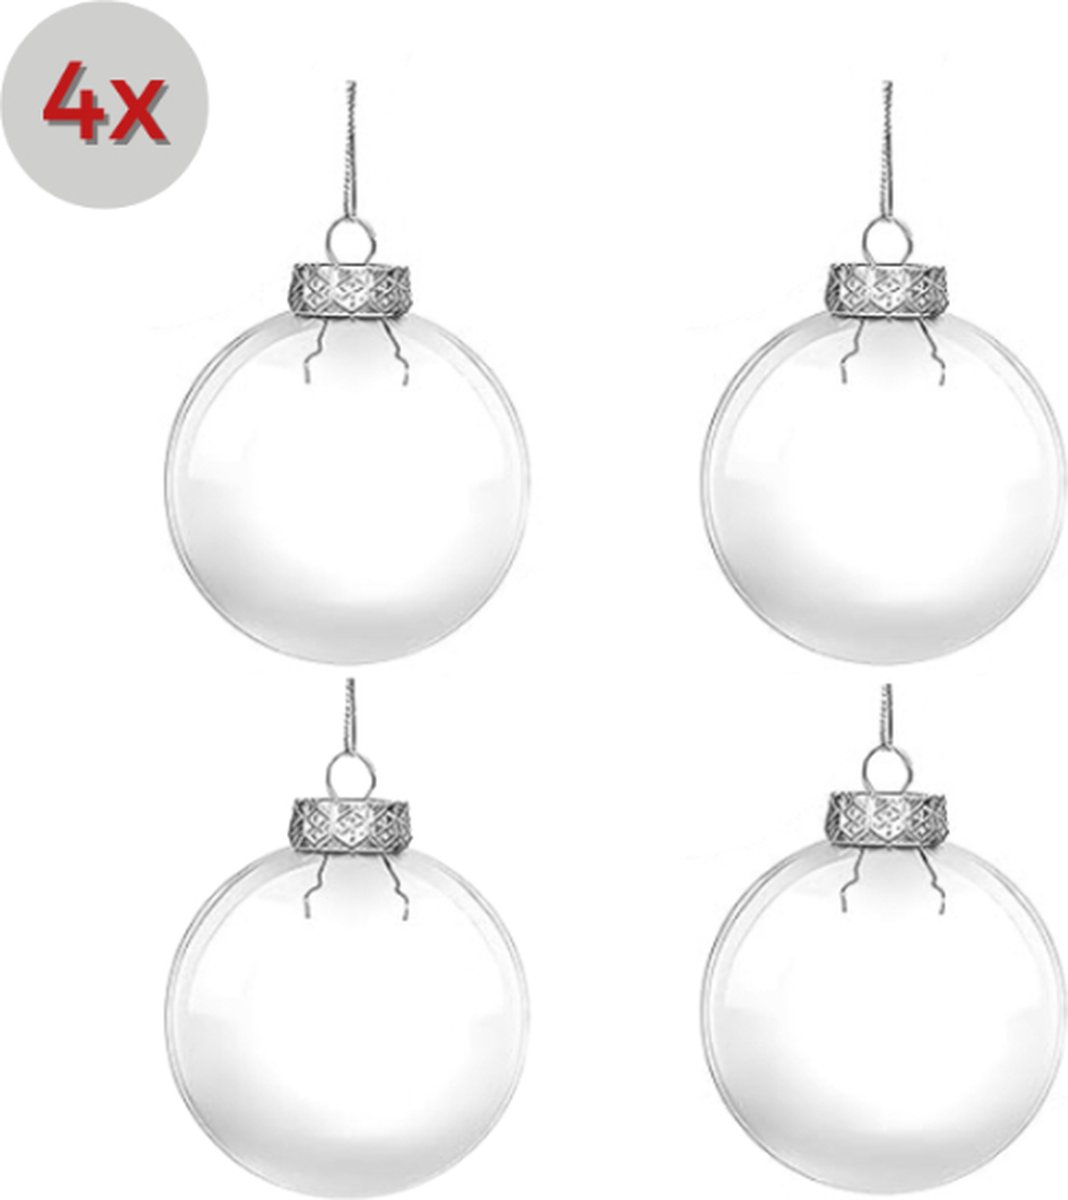 4 stuks Transparante kerstversiering DIY kerstballen - 8 cm - Kerstbal - Kerstballenset - Ornament - Kerstboomdecoratie - Kerstornamenten